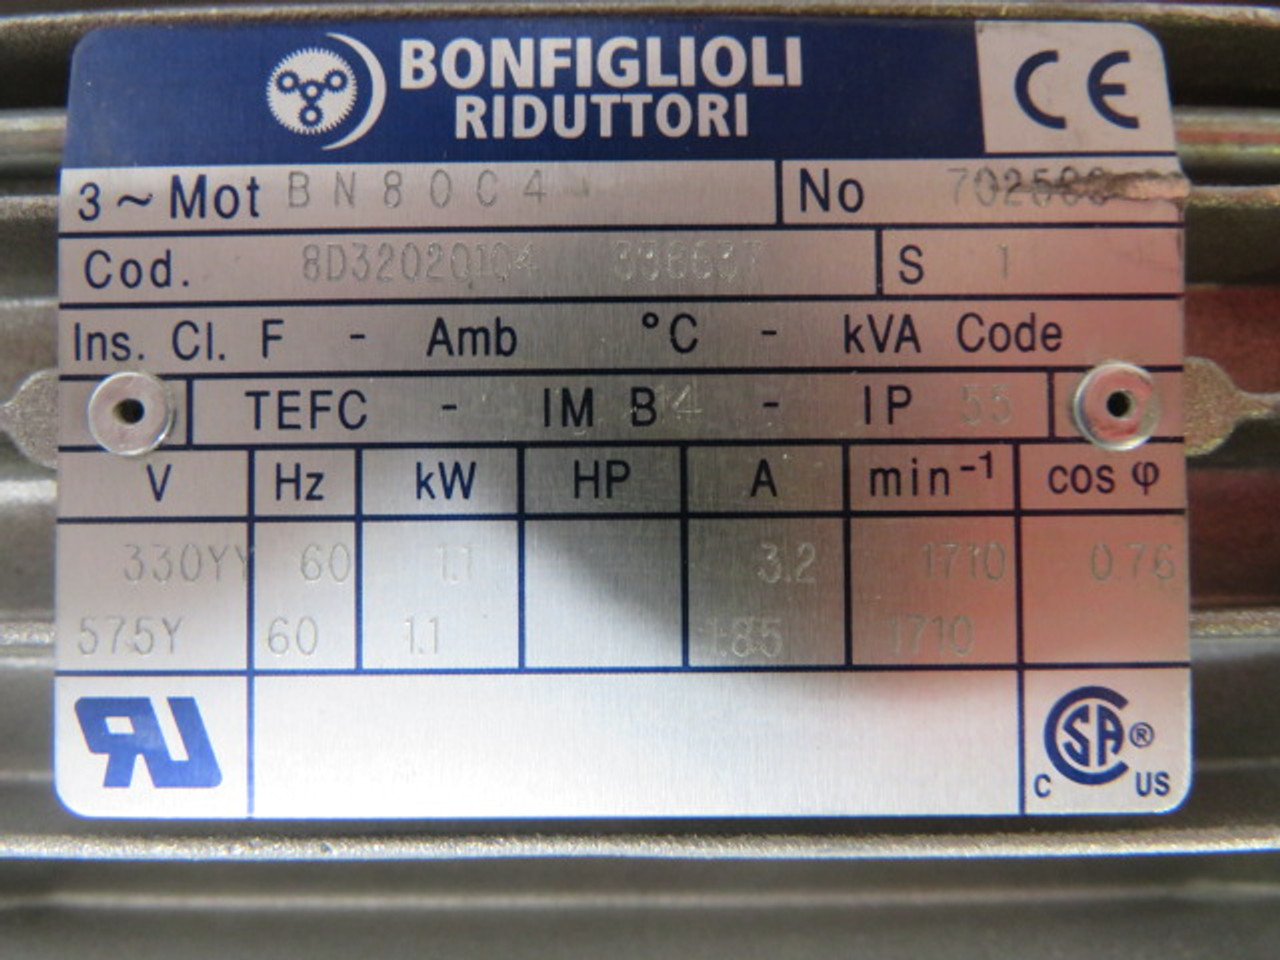 Bonfiglioli BN80C4-8D3202020104-336677 Motor 1.1kW c/w Gear Reducer 7:1 USED